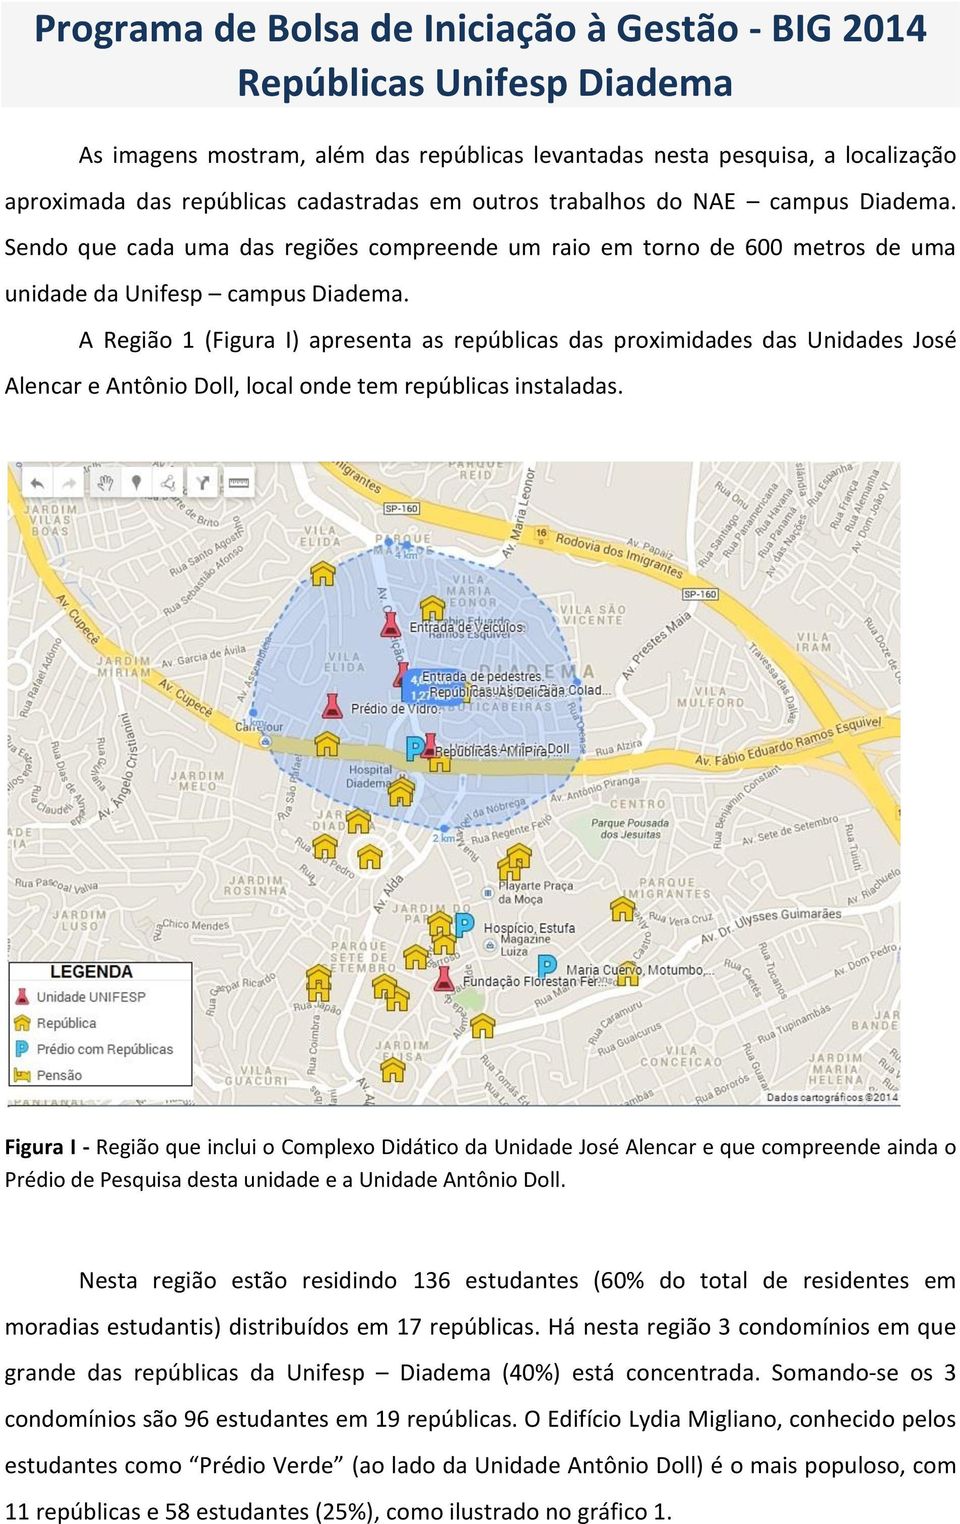 A Região 1 (Figura I) apresenta as repúblicas das proximidades das Unidades José Alencar e Antônio Doll, local onde tem repúblicas instaladas.